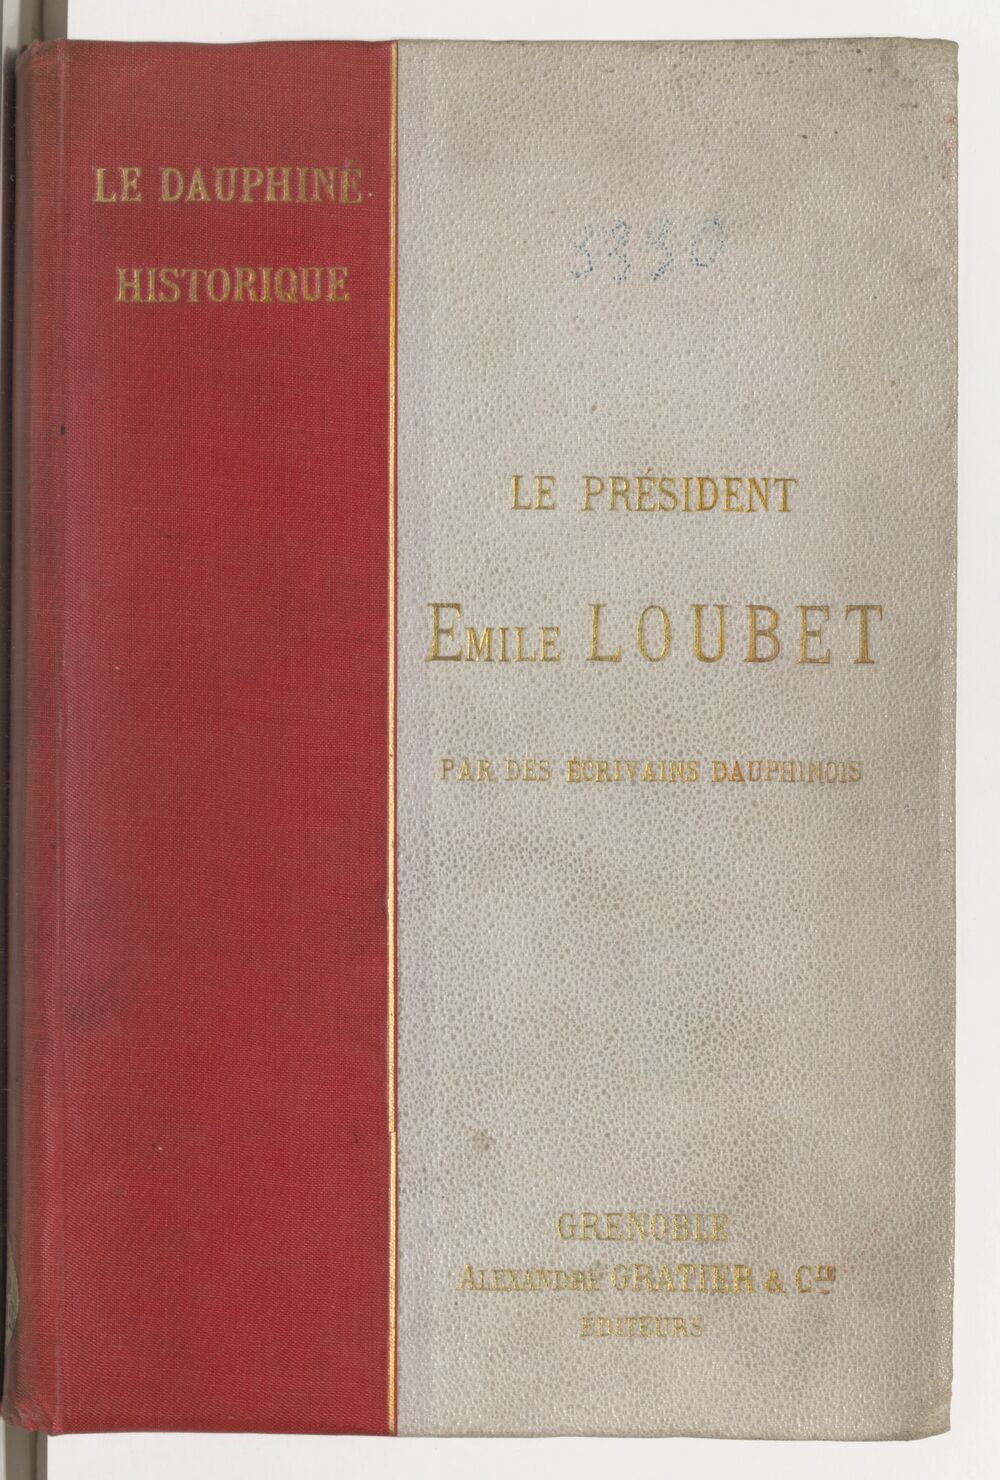 Le président Emile Loubet : le Dauphiné historique / par des écrivains dauphinois